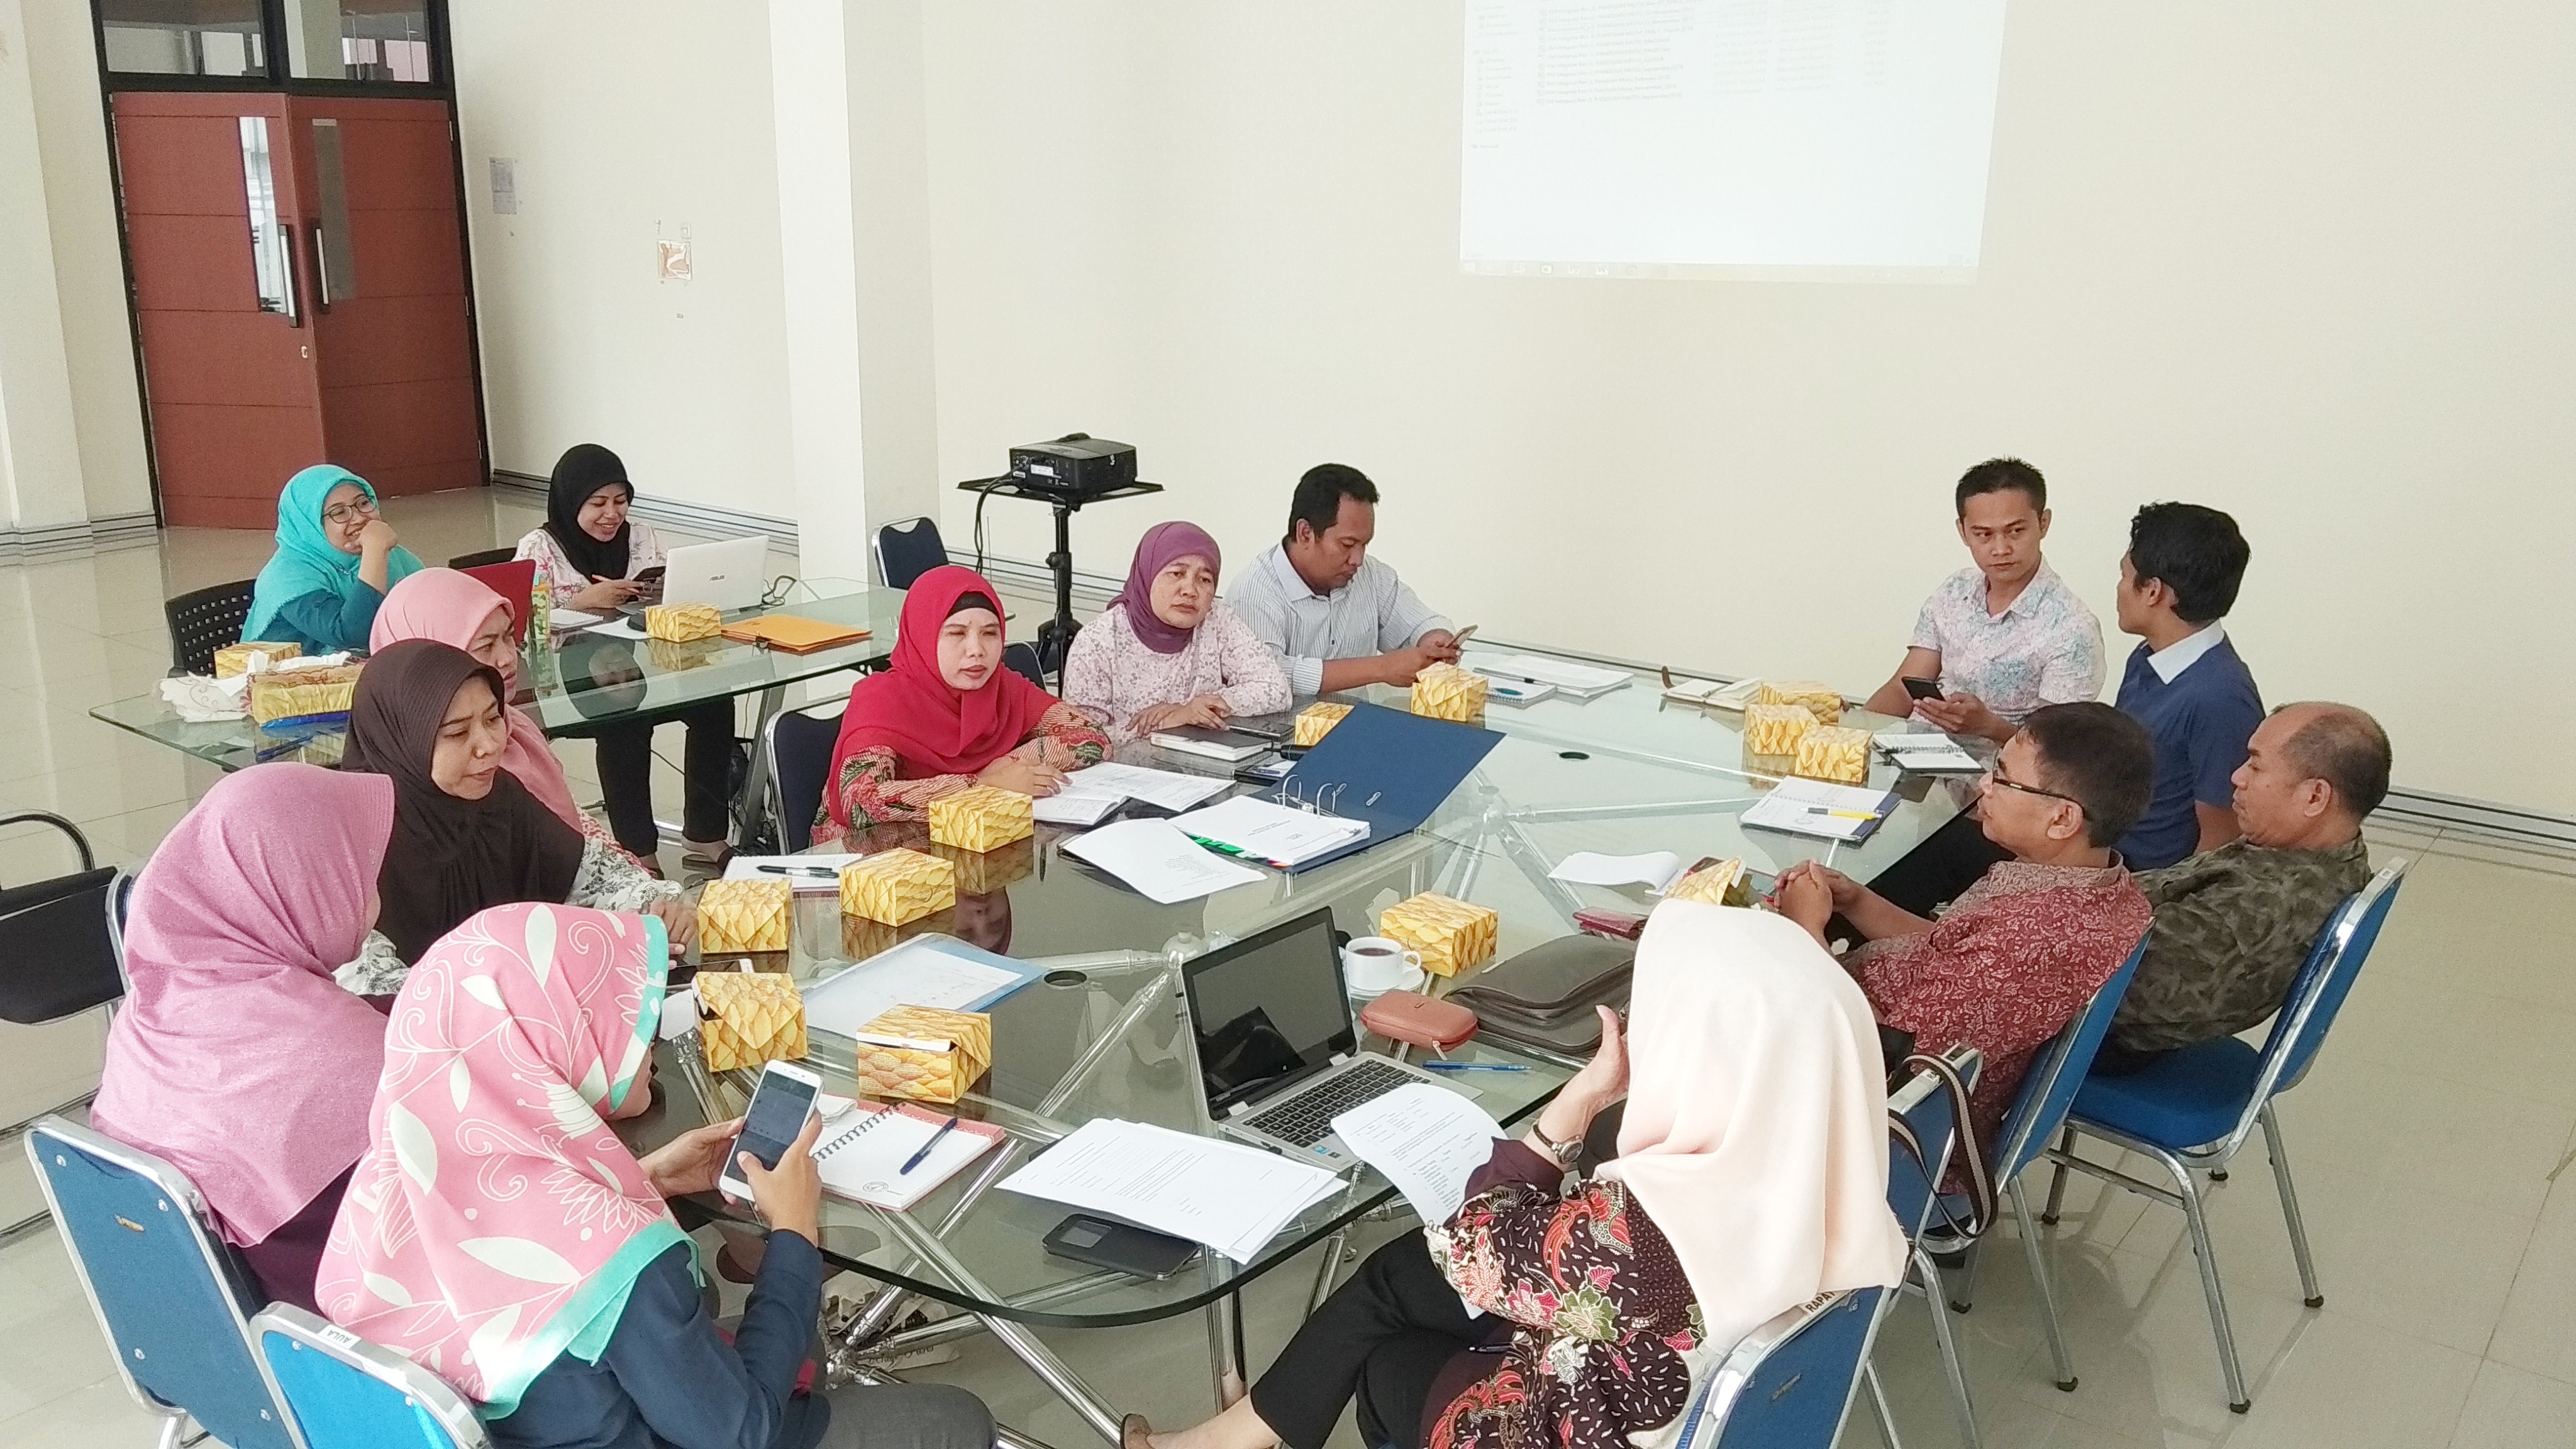 On Site Visit, Calon Laboratorium Rujukan Pengujian Pangan Indonesia (LRPPI)